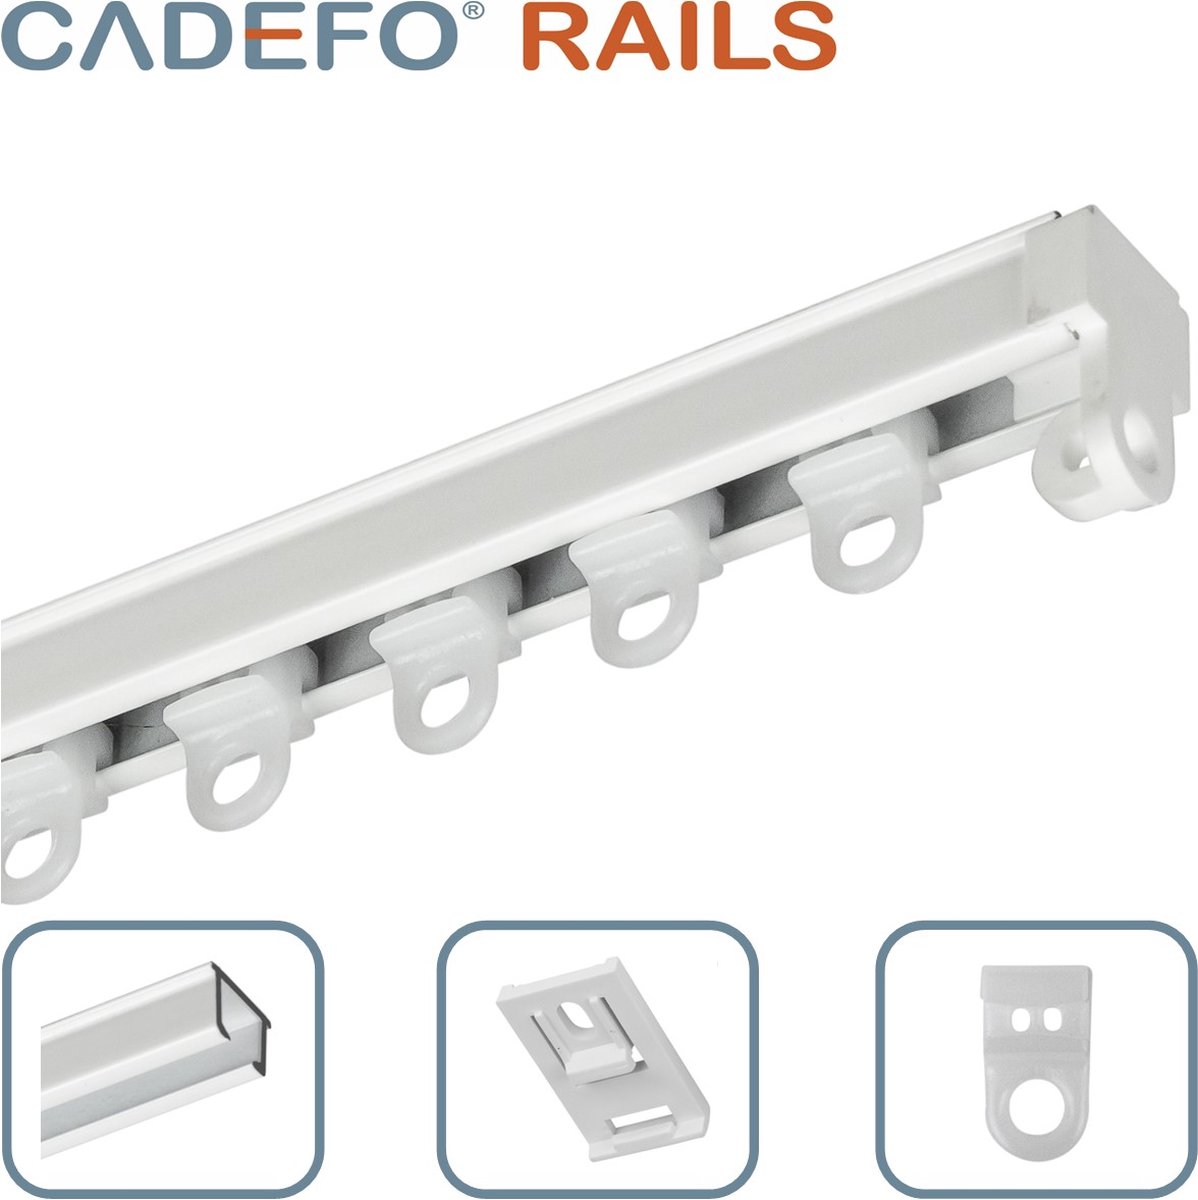 CADEFO RAILS (501 - 550 cm) Gordijnrails - Compleet op maat! - UIT 1 STUK - Leverbaar tot 6 meter - Plafondbevestiging - Lengte 508 cm